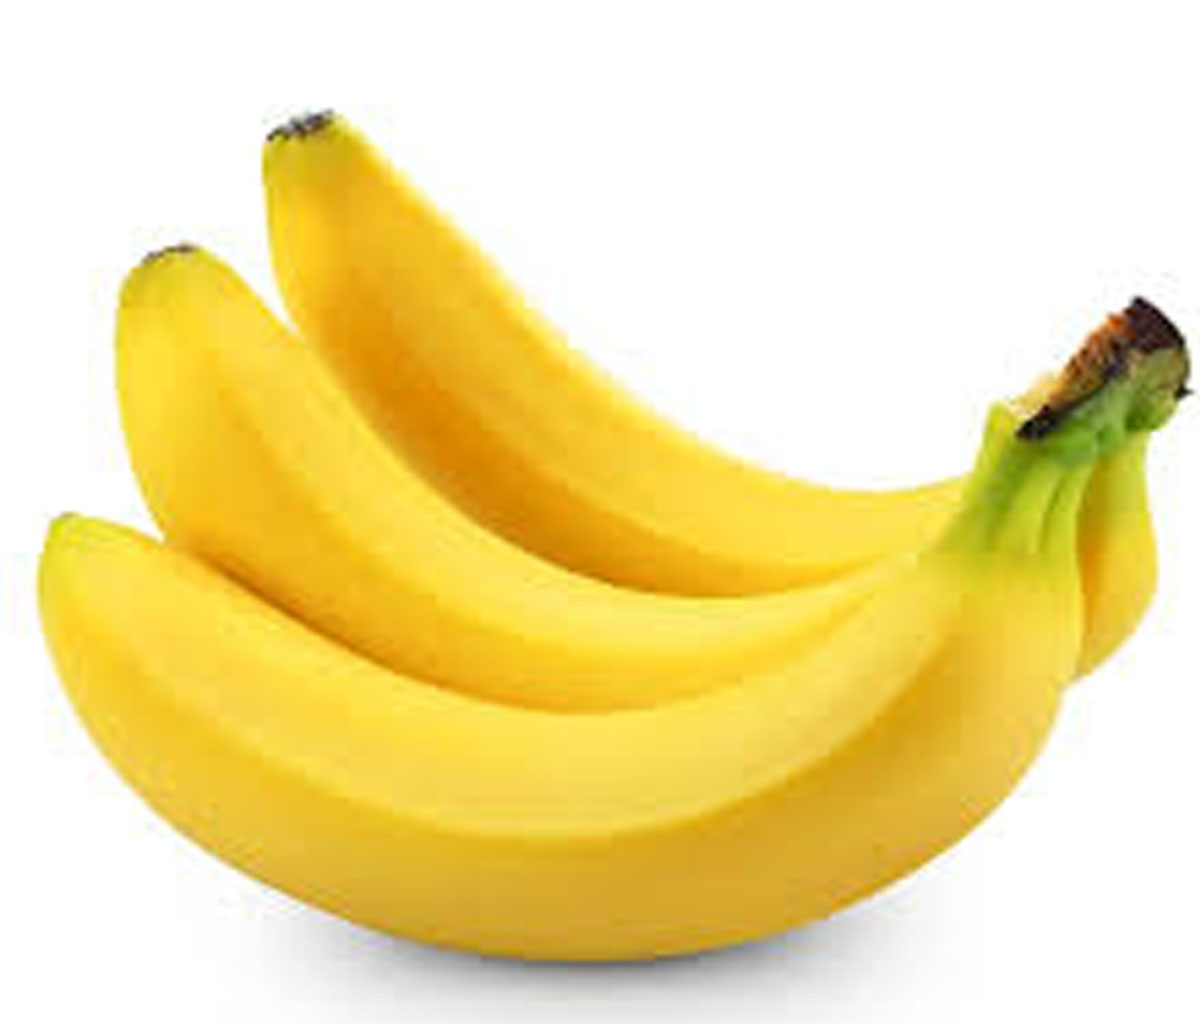 5743 2 تفسير رؤية الموز في المنام - الموز له فوائد هامه لصحه الانسان تليد خلف